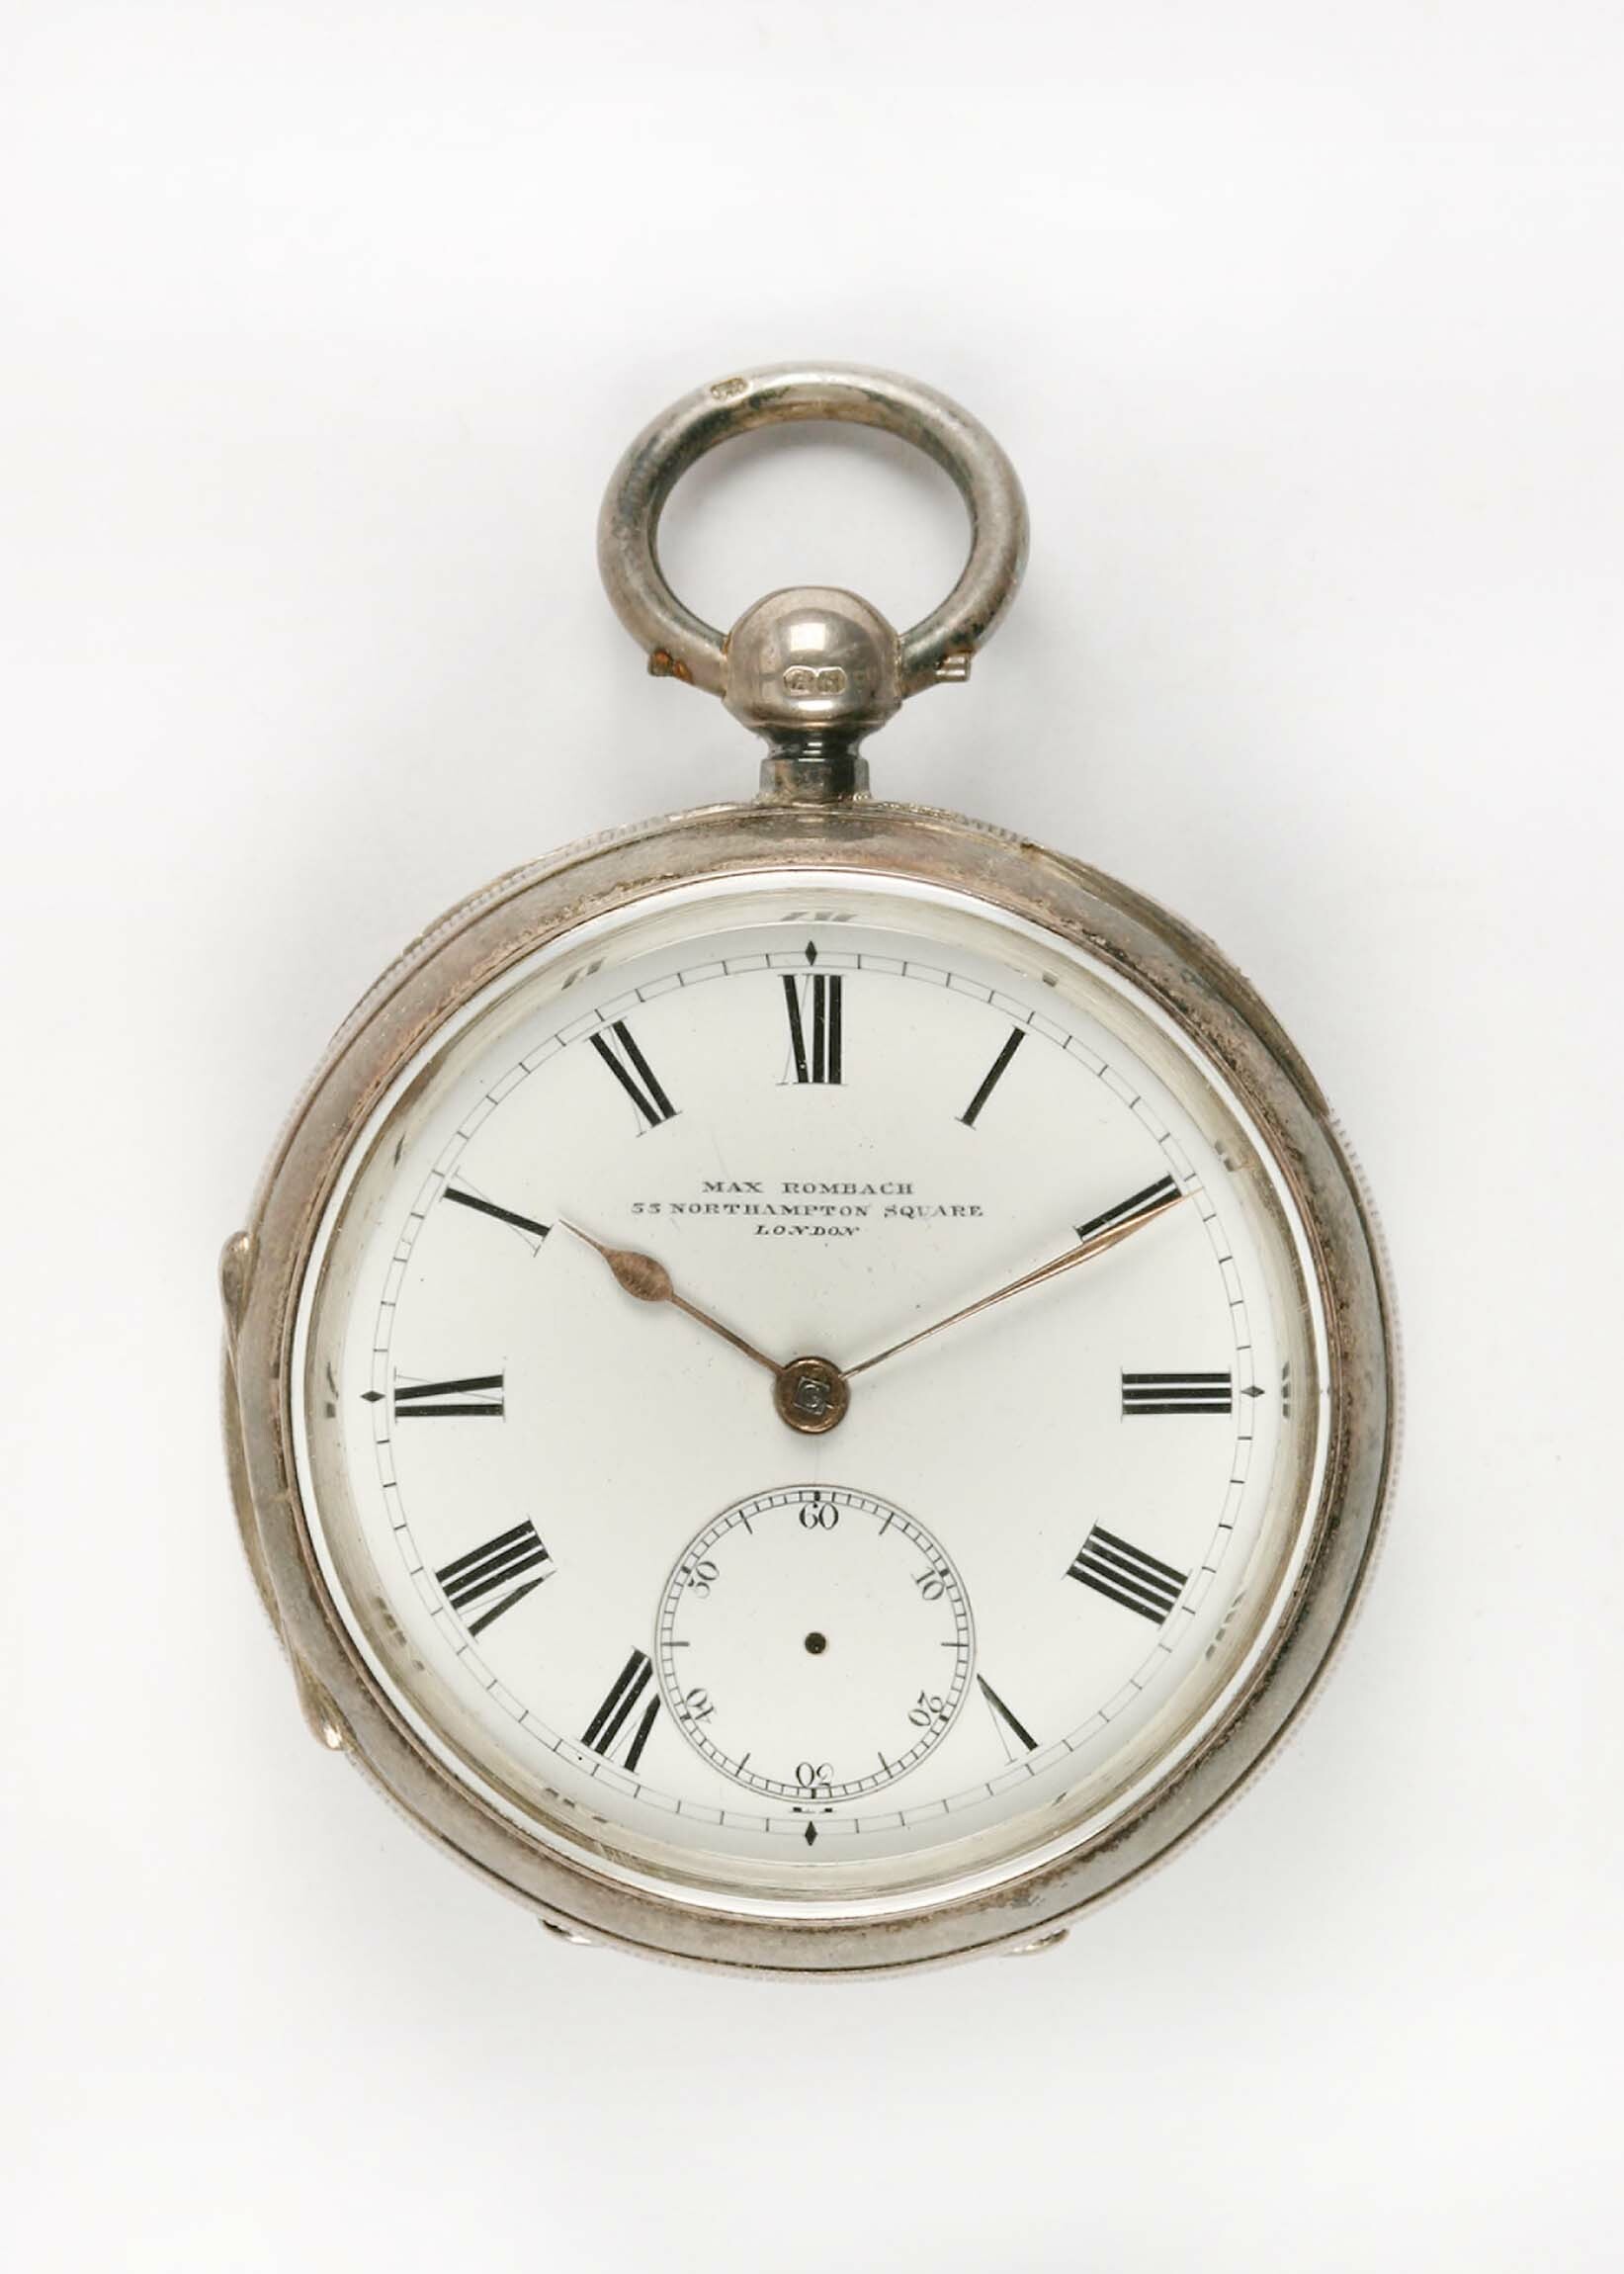 Taschenuhr, Max Rombach, London, um 1893 (Deutsches Uhrenmuseum CC BY-SA)